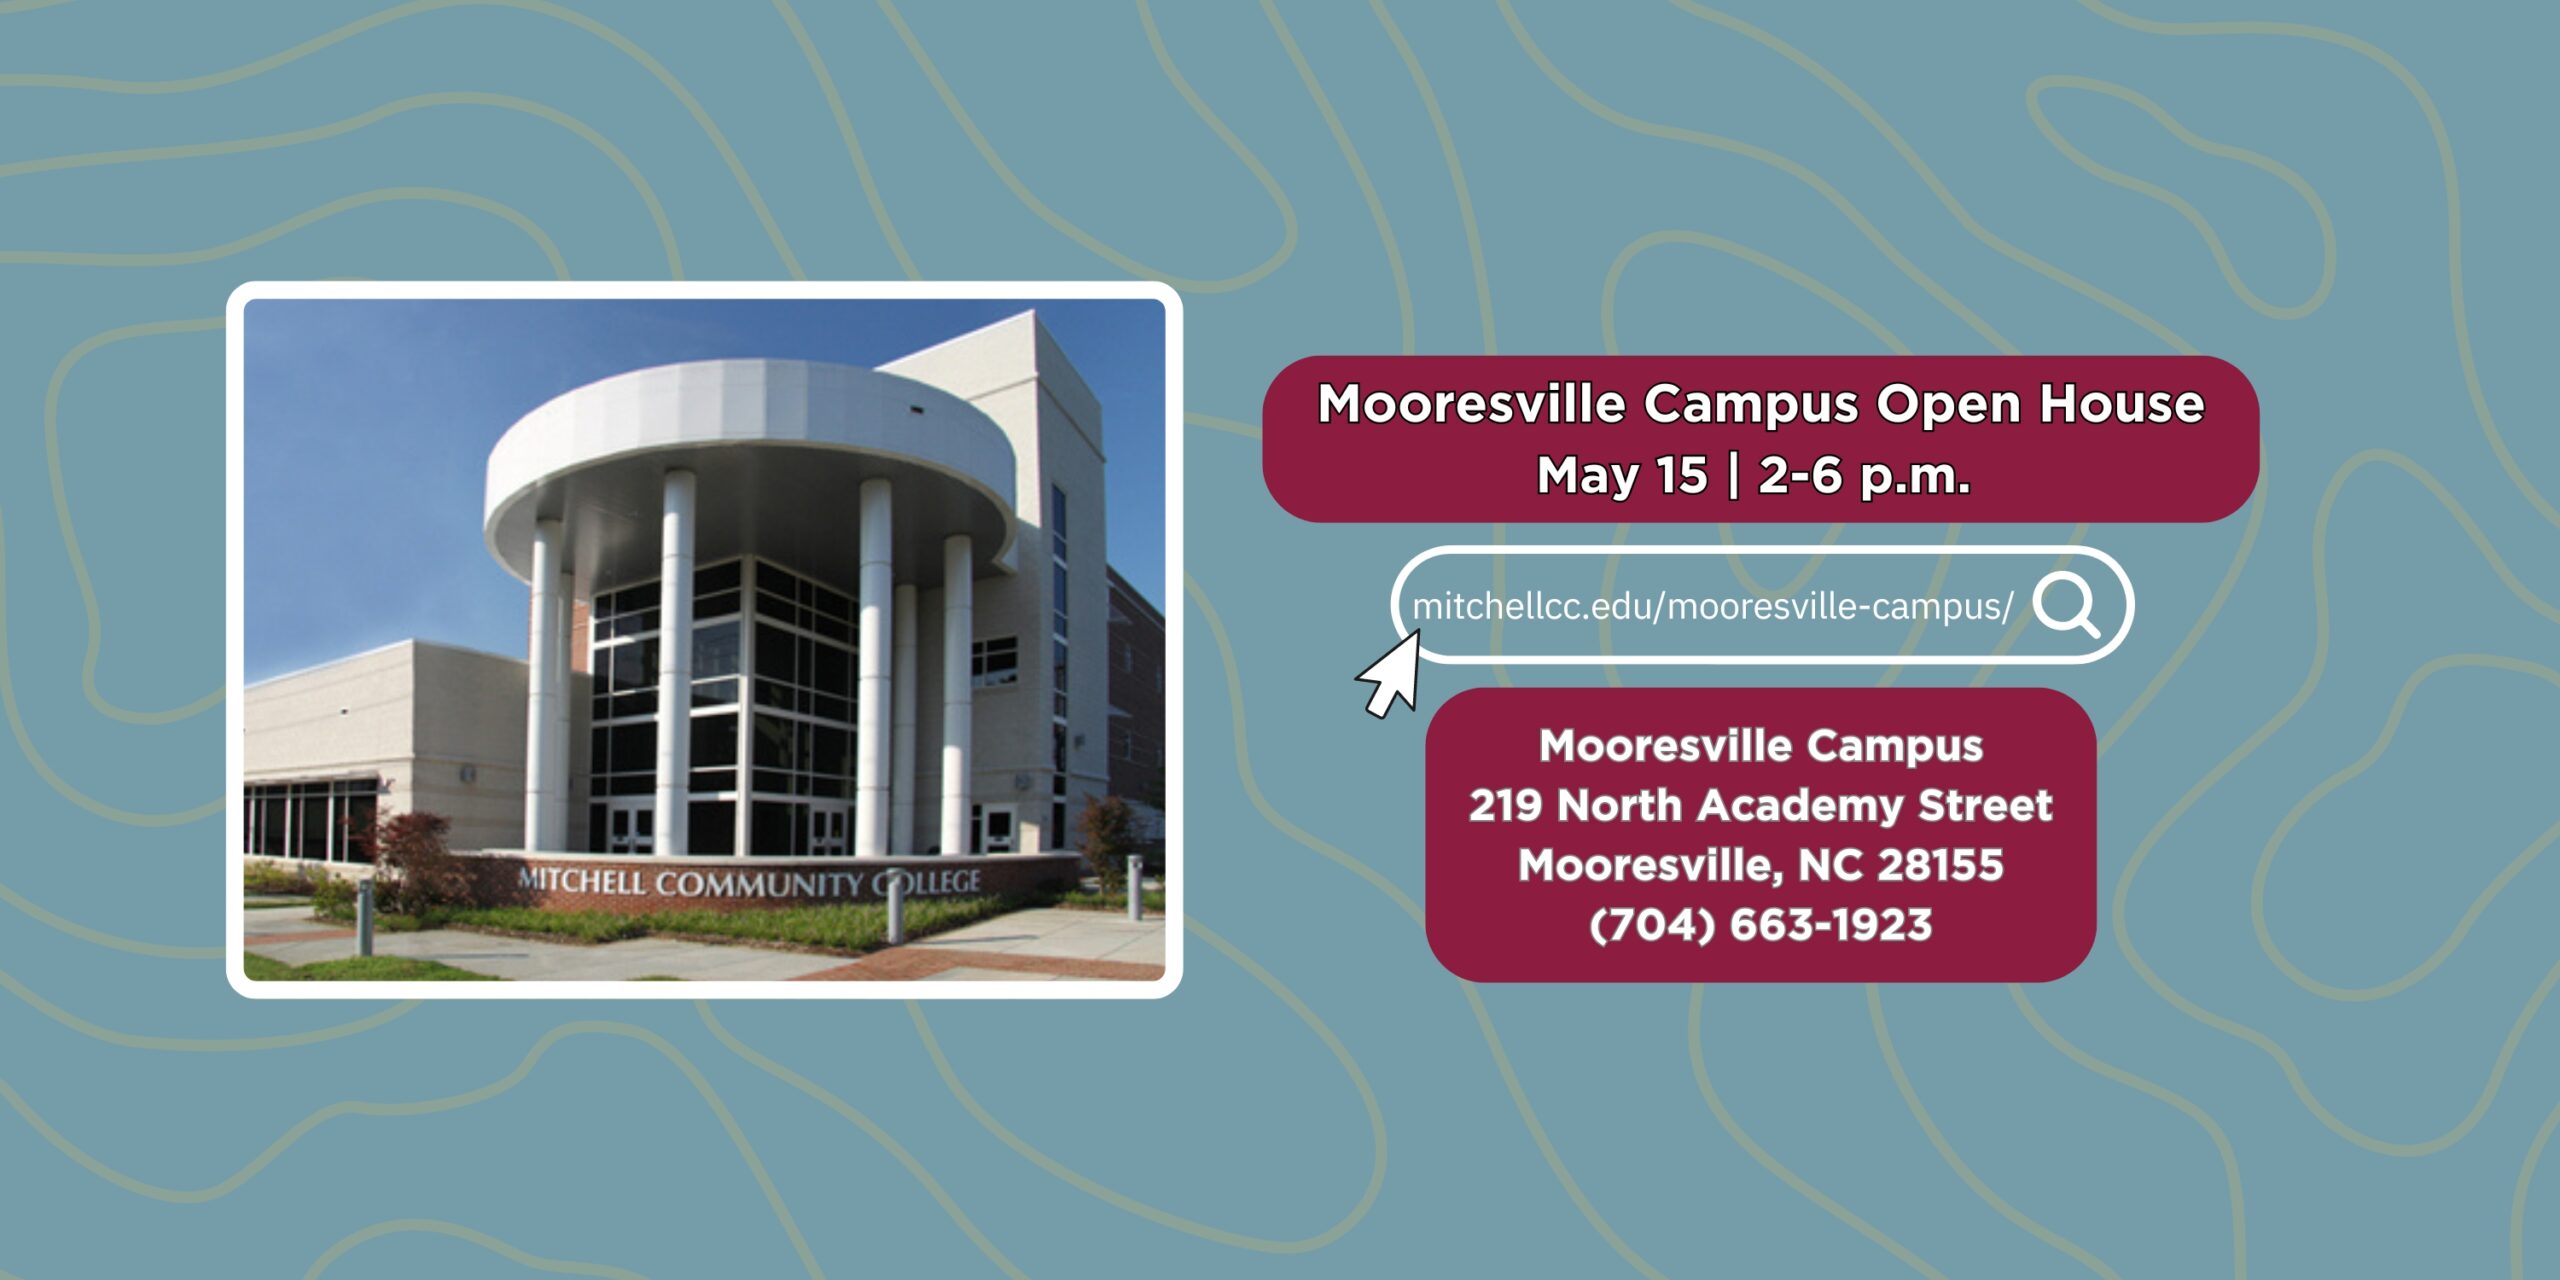 「ムーアズビル キャンパス オープン ハウス | 15 月 2 日 | 午後 6 時から 219 時 | ムーアズビル キャンパス 28155 North Academy Street - Mooresville, NC 704 - (663 1923-XNUMX)」と書かれたバナー。詳細を確認するには、バナーをクリックするか、mitchellcc.edu/mooresville- にアクセスしてください。キャンパス/"。